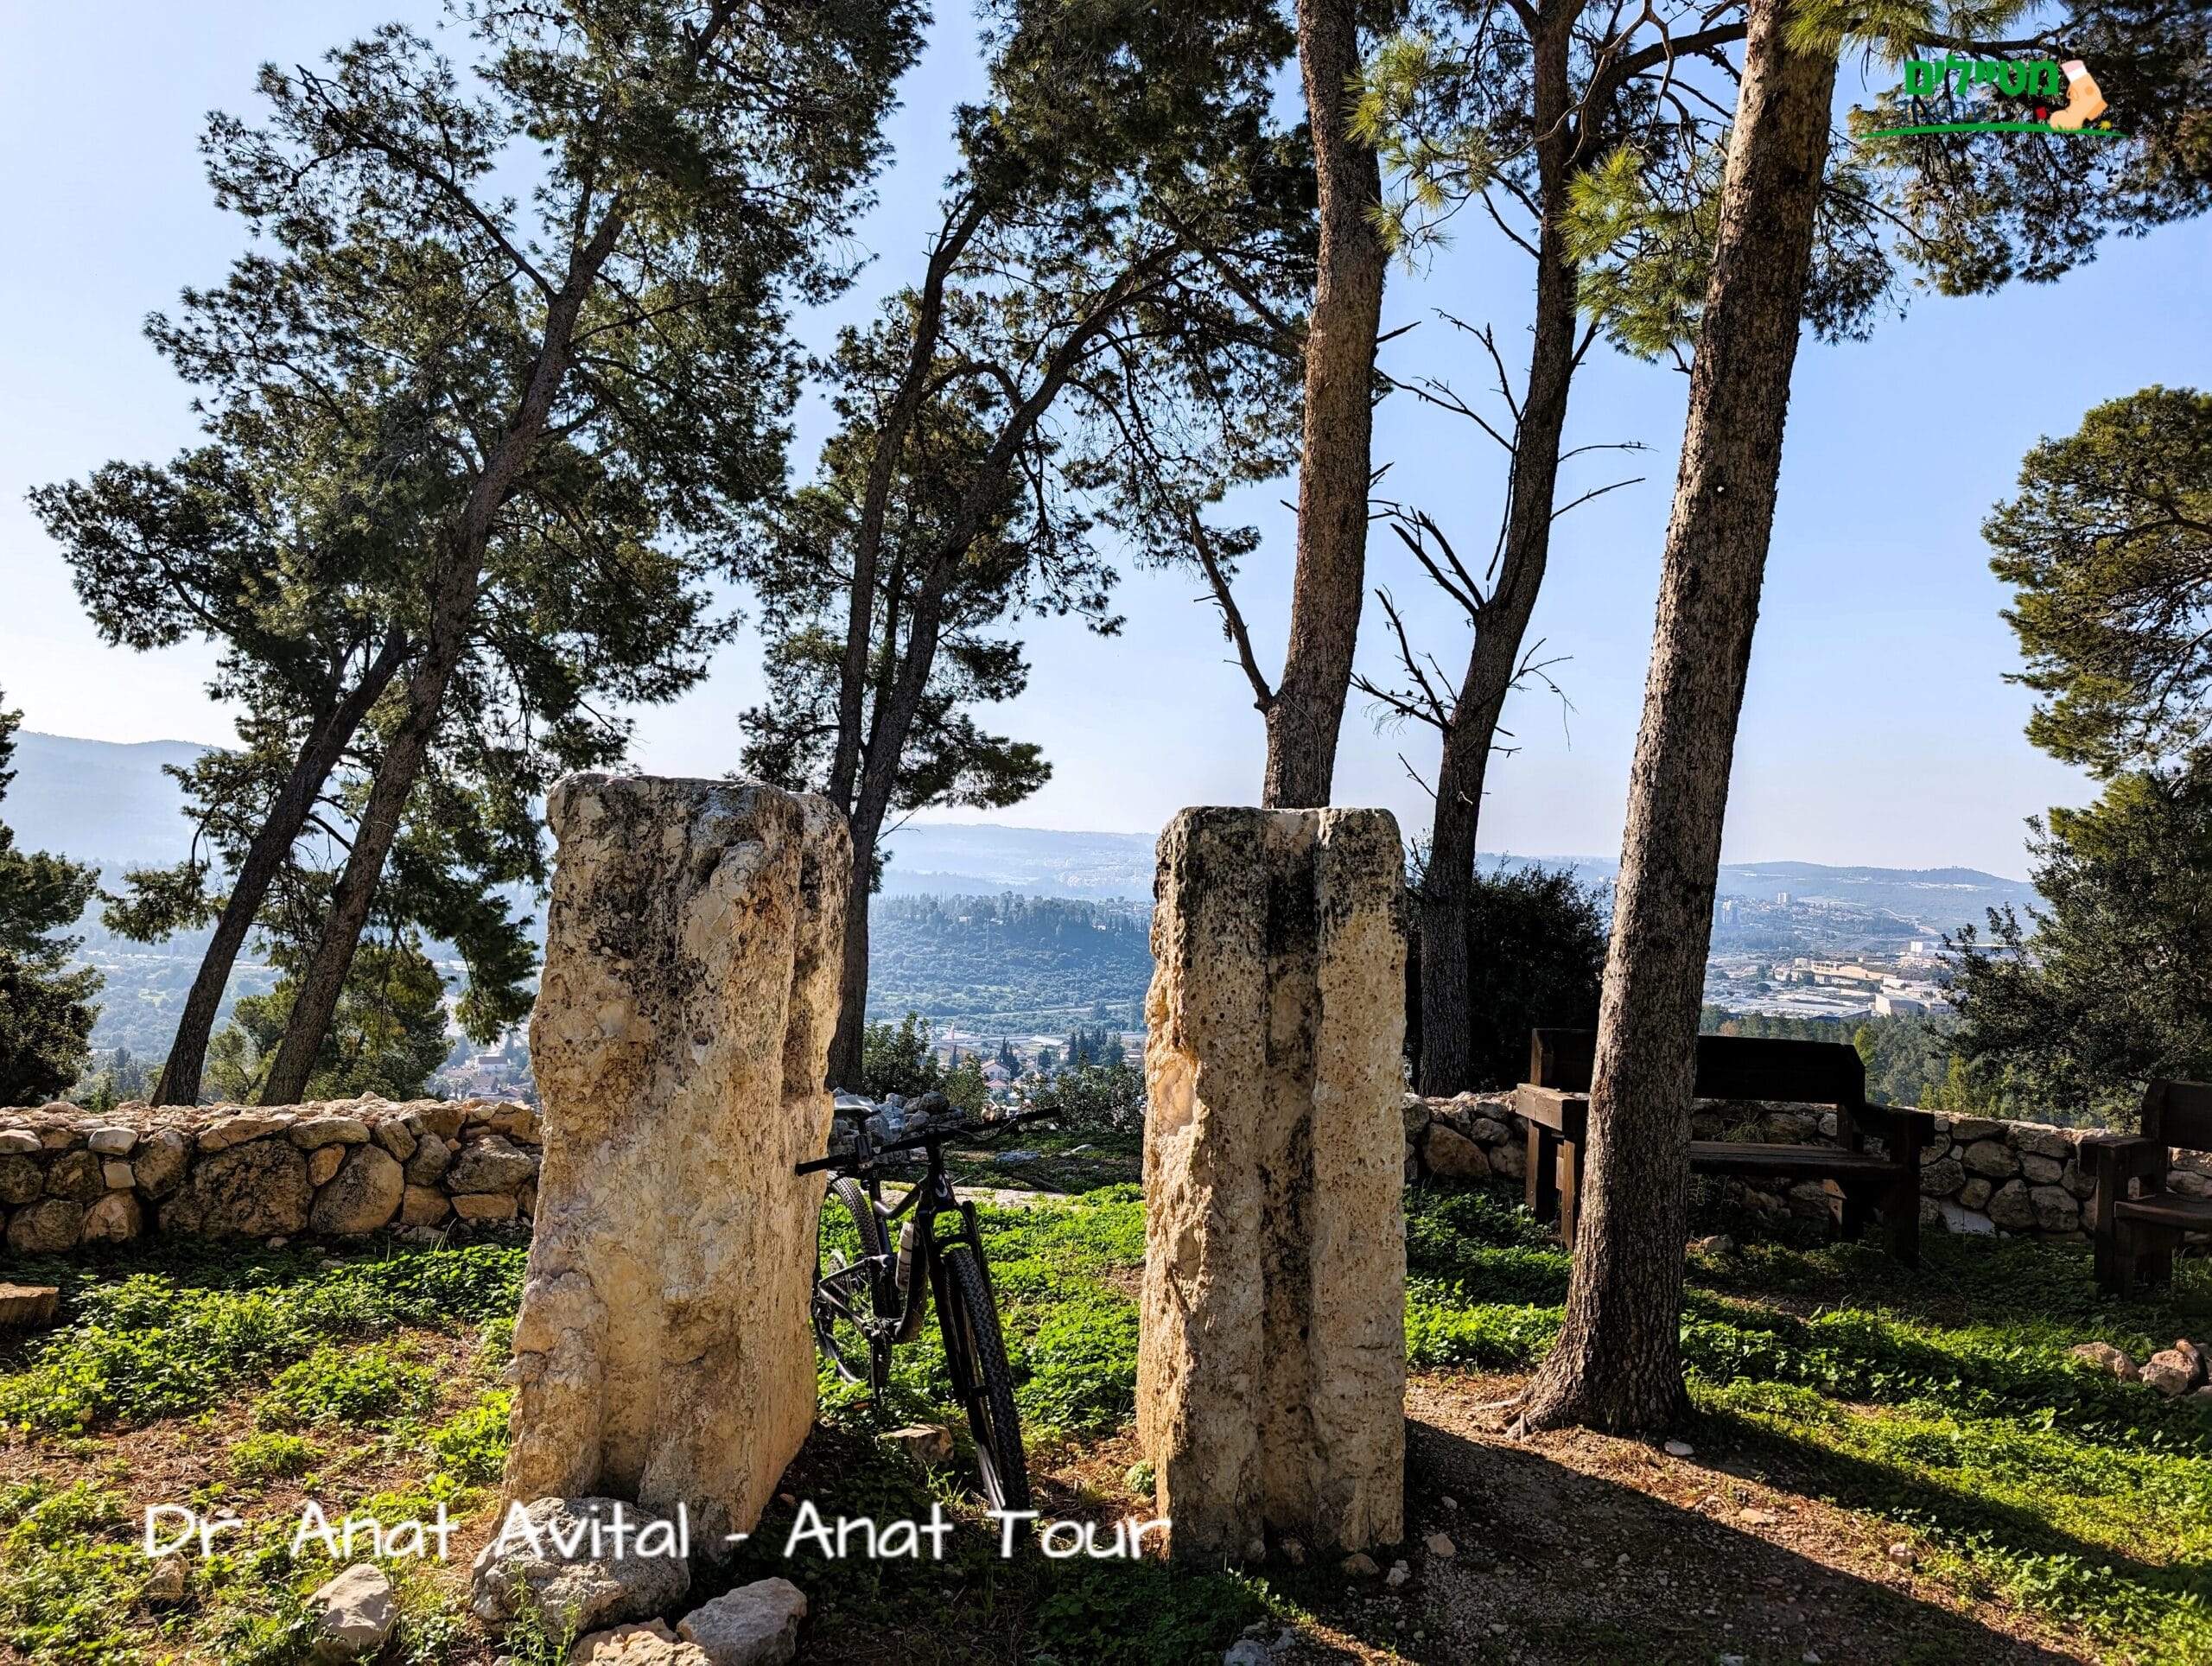 טיול אופניים - בתולות בית הבד מול נוף מטרף בחניון הארבעה ביער אשתאול, צילום: ד"ר ענת אביטל